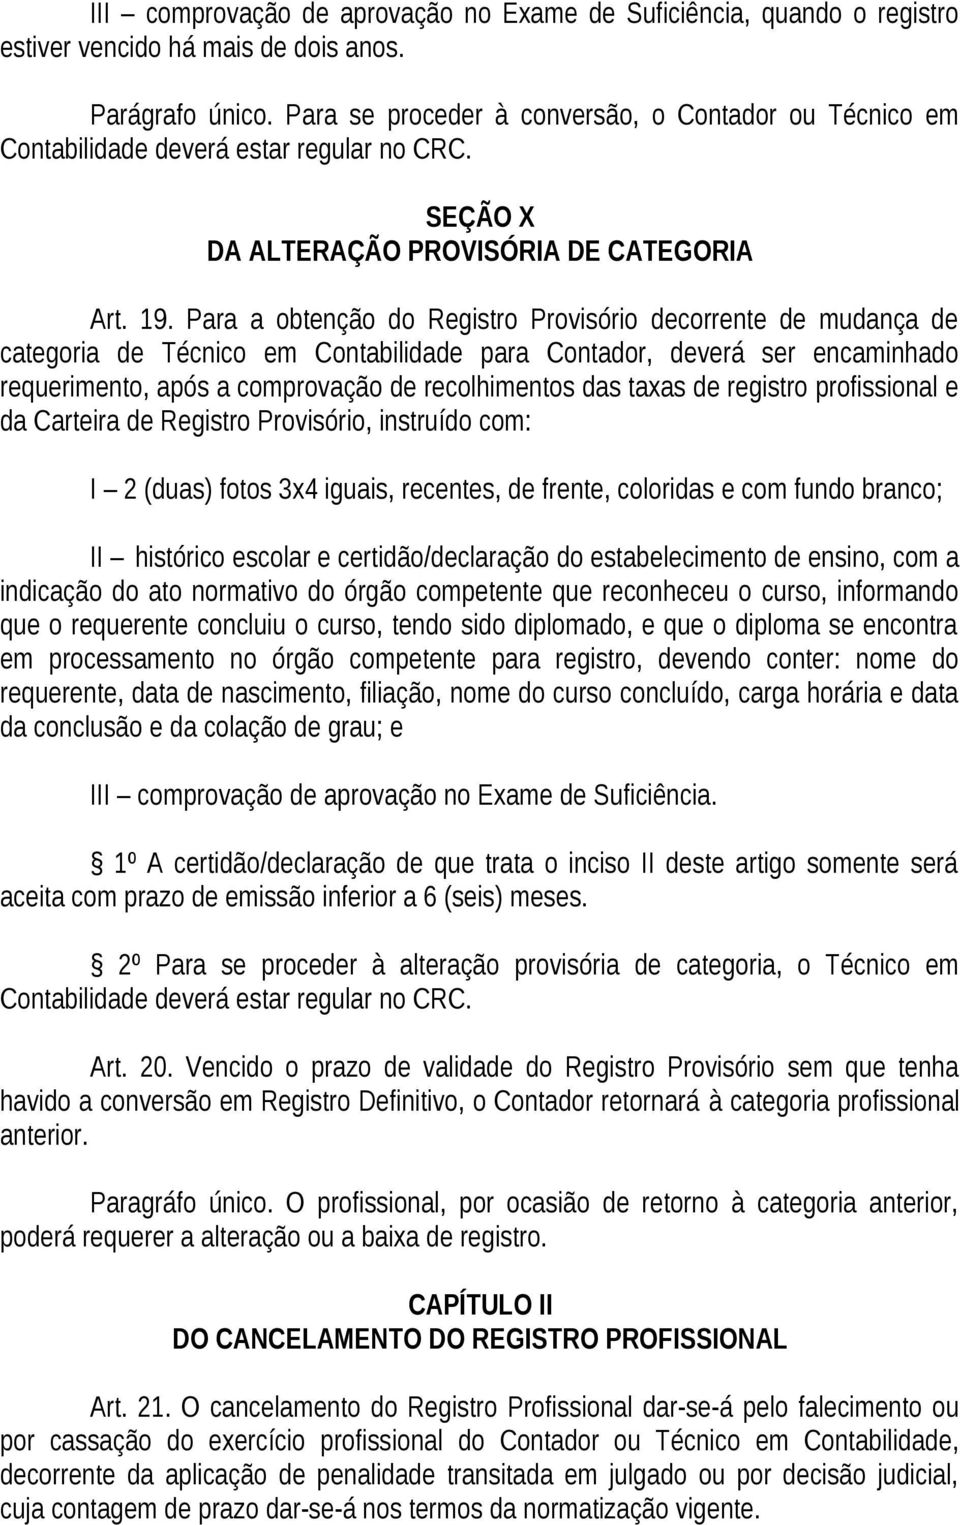 Para a obtenção do Registro Provisório decorrente de mudança de categoria de Técnico em Contabilidade para Contador, deverá ser encaminhado requerimento, após a comprovação de recolhimentos das taxas